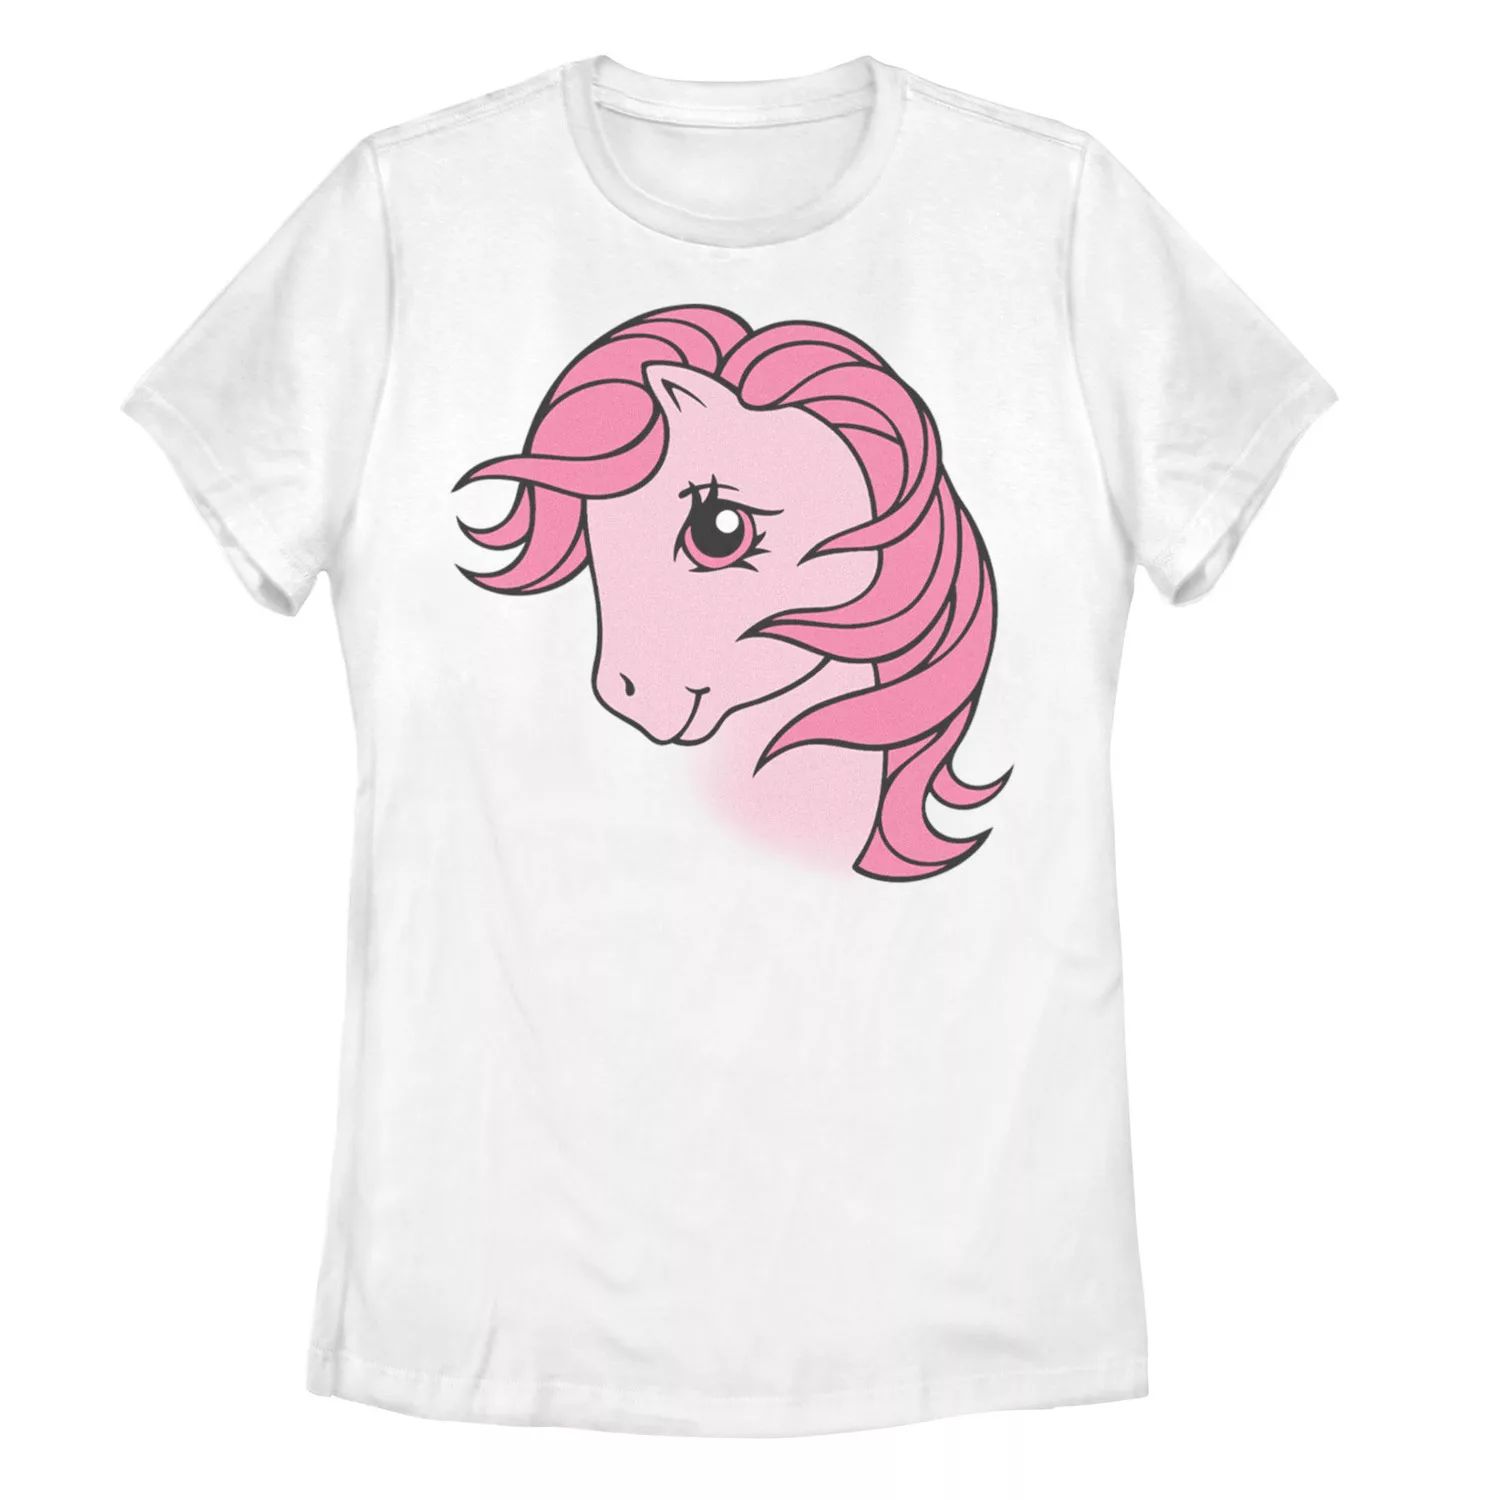 Футболка с рисунком сладкой ваты My Little Pony для юниоров My Little Pony футболка с рисунком my little pony butterscotch для девочек 7–16 лет my little pony